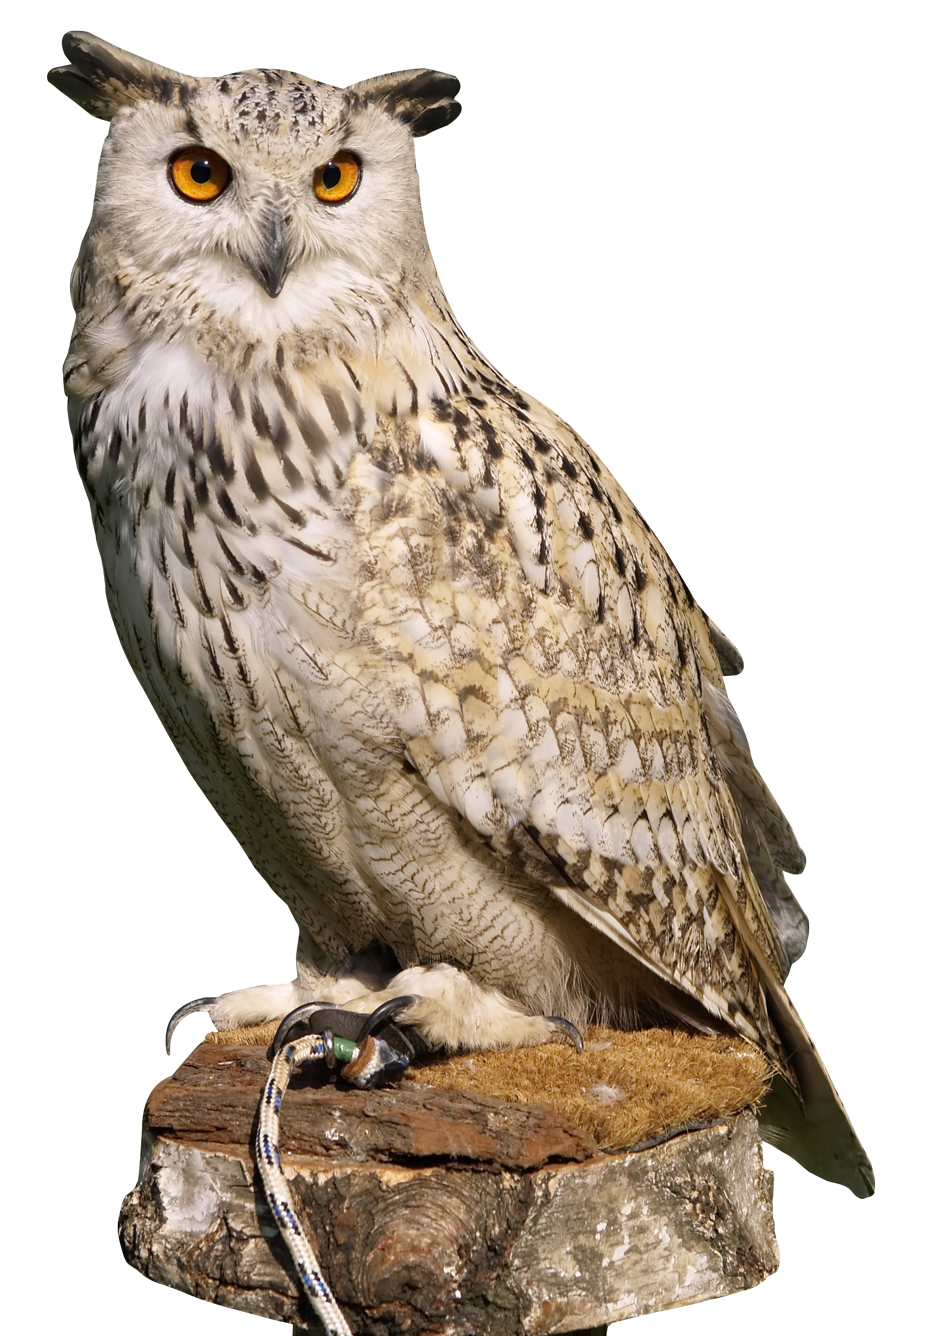 november clipart owl